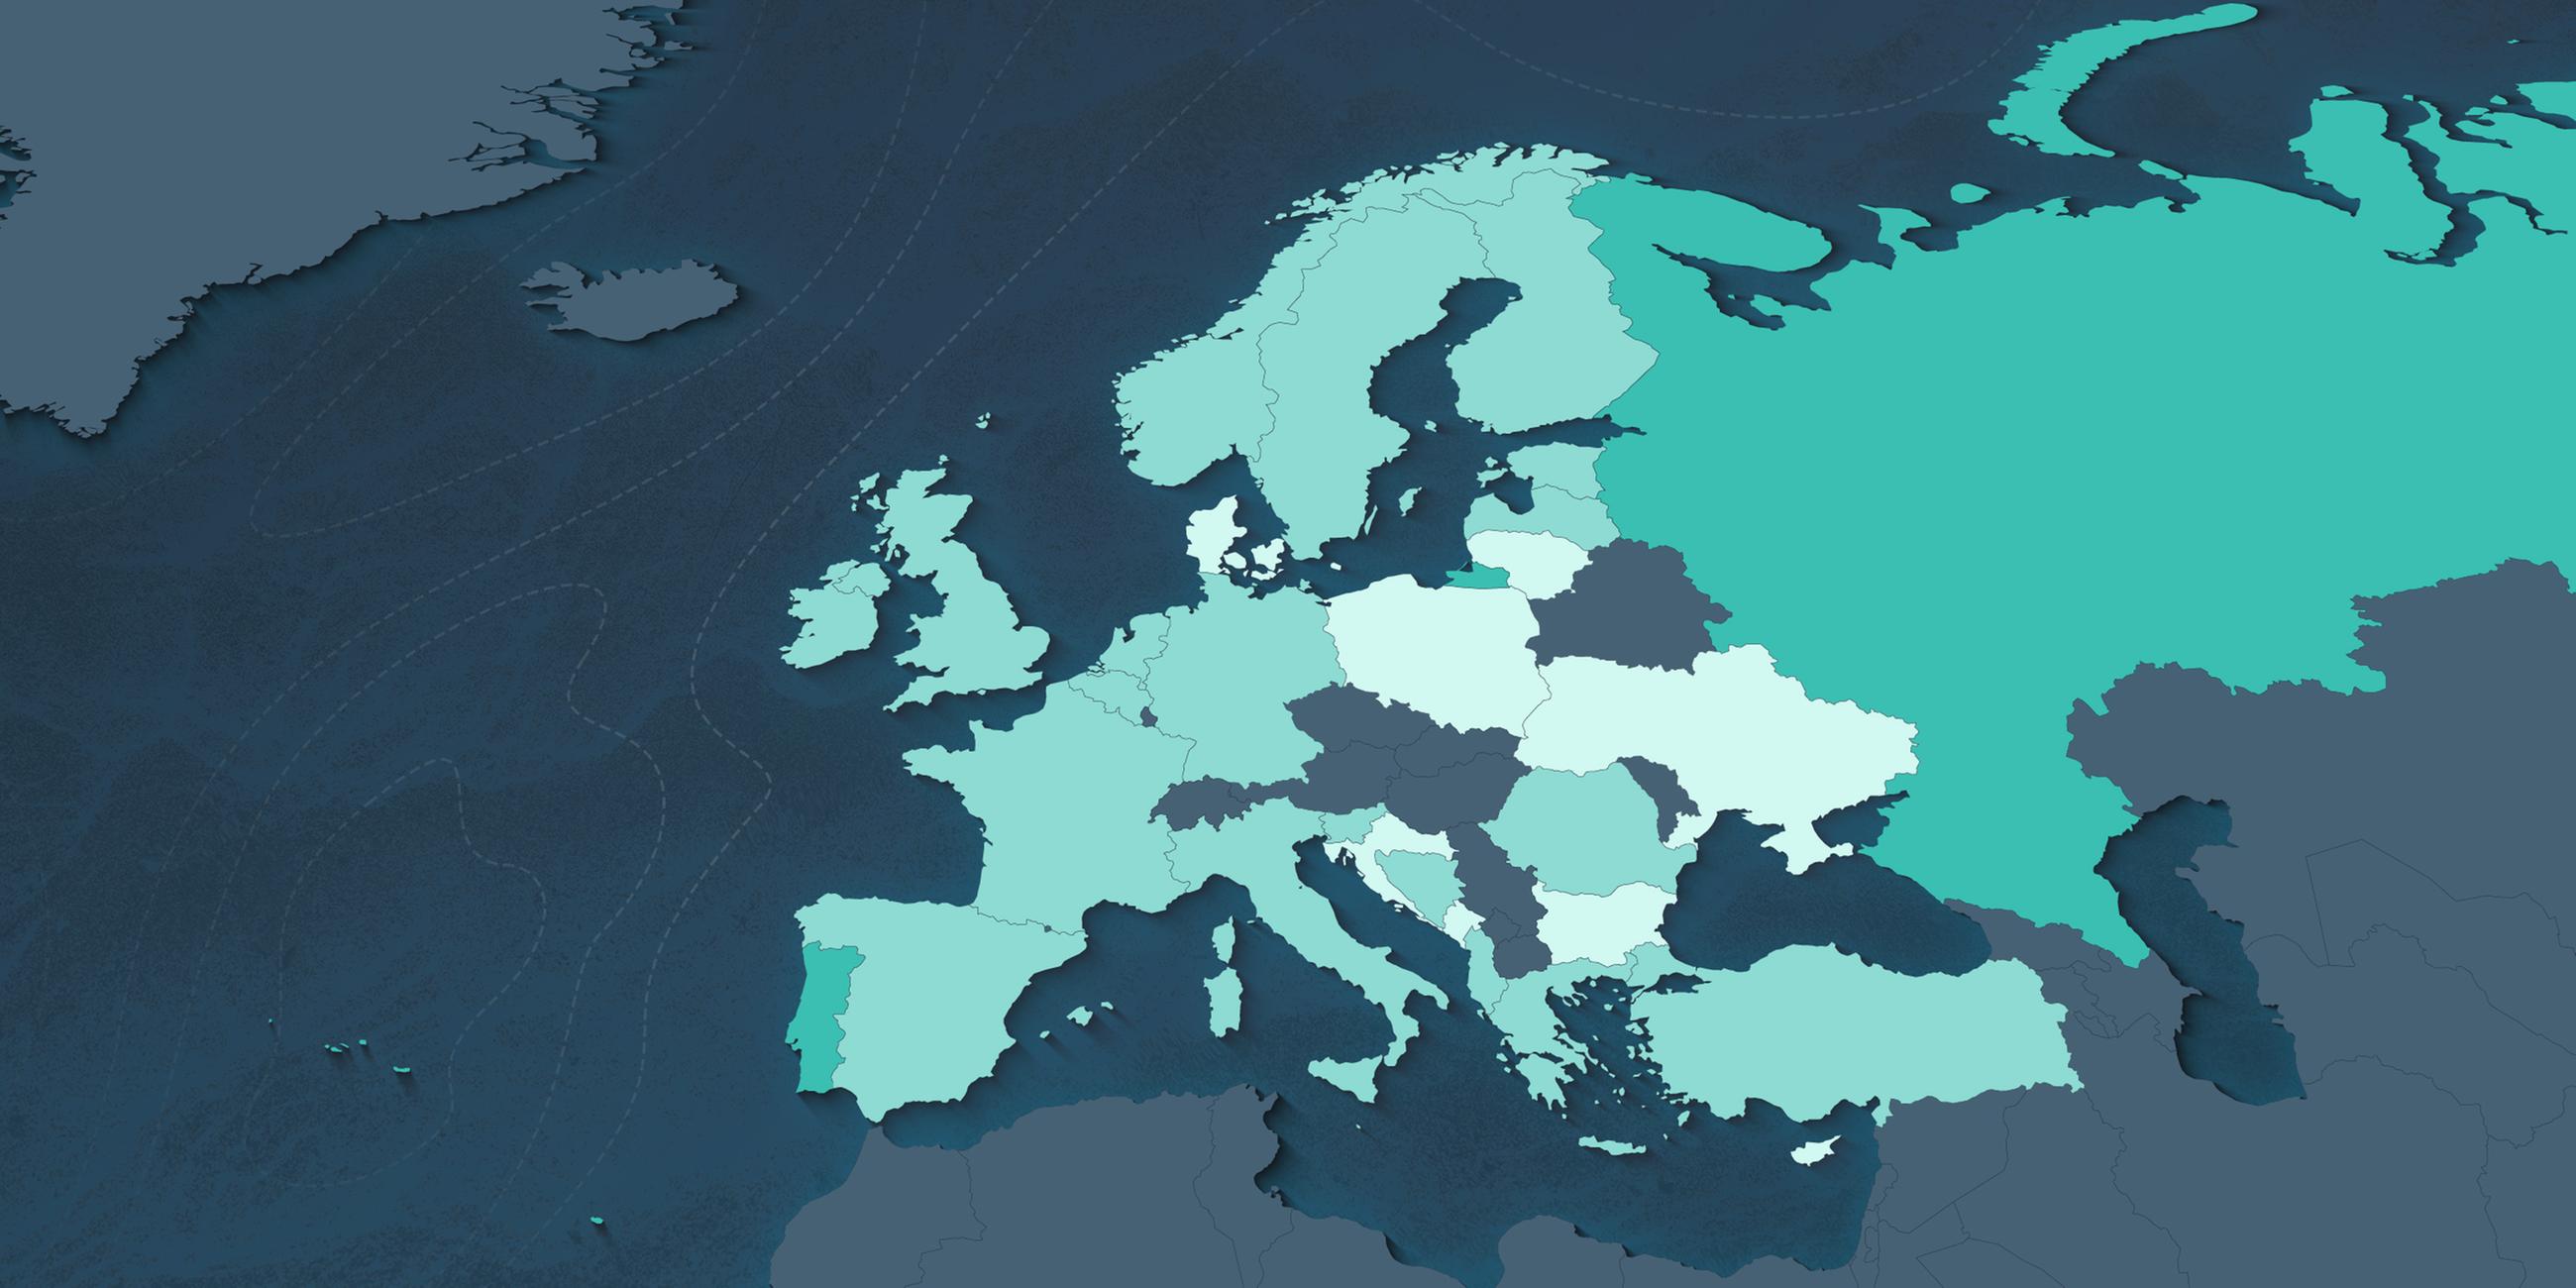 Europakarte mit Einfärbung der Länder nach der Gesundheit ihrer Meere